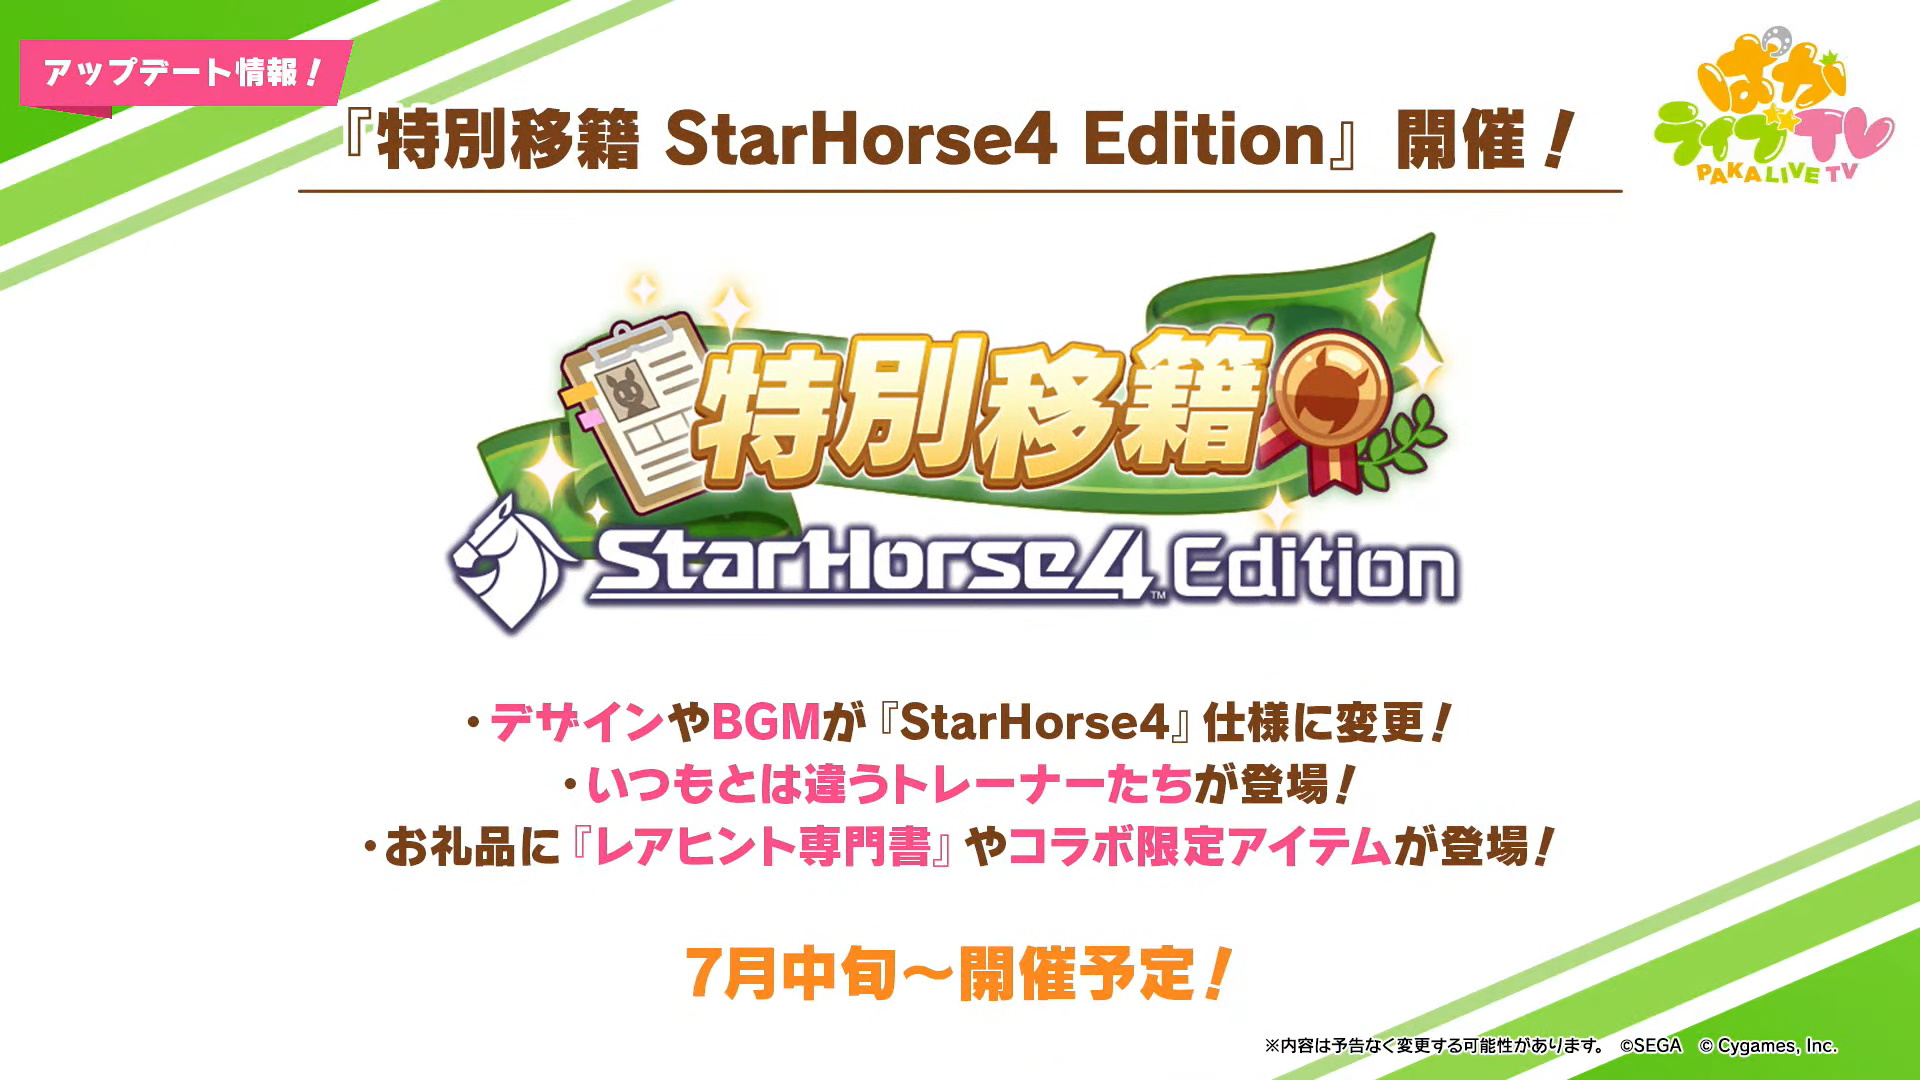 ウマ娘」、「StarHorse4」コラボで最大1,500ジュエル配布決定 - GAME Watch